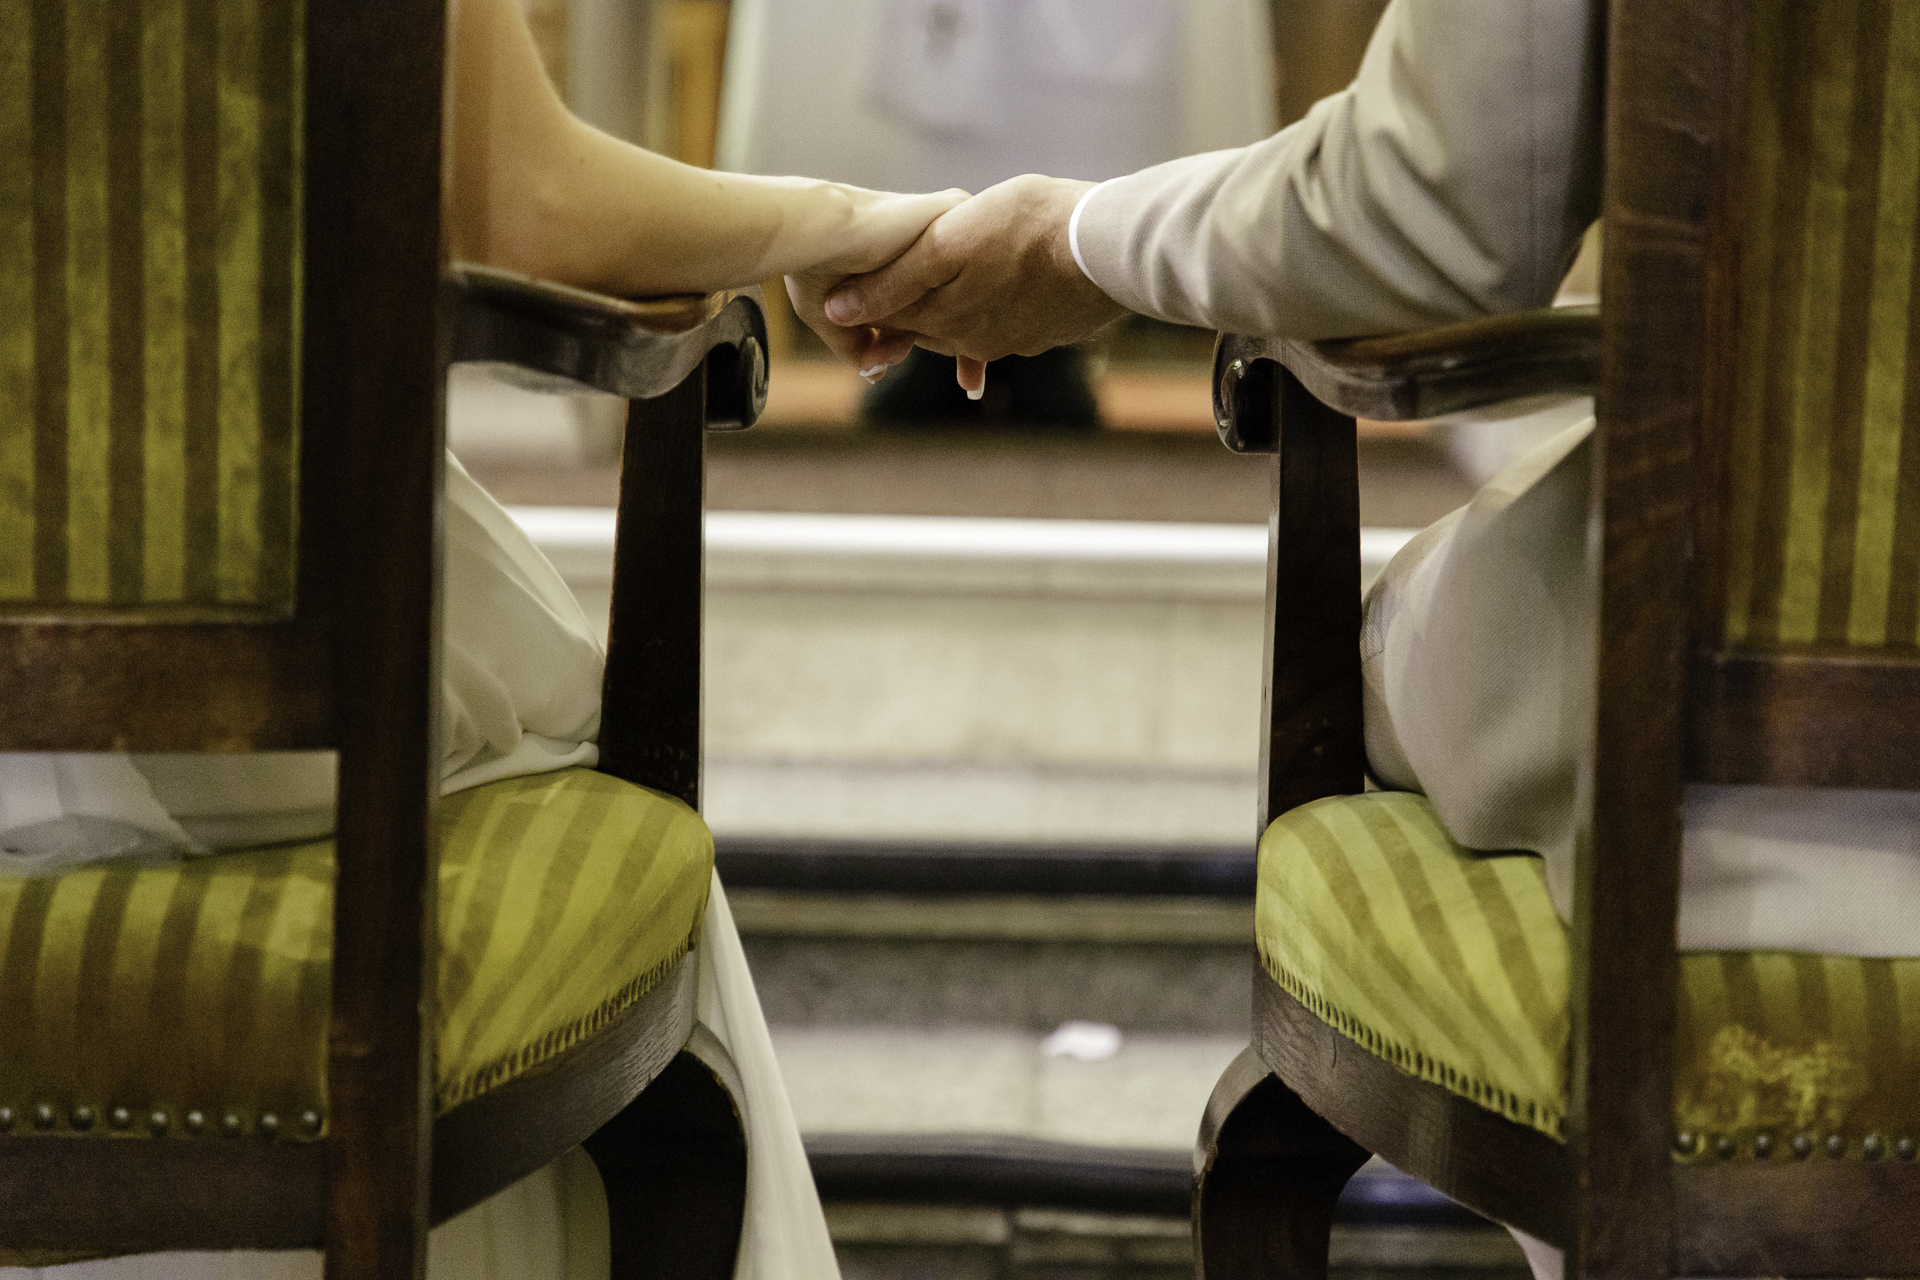 Photo de détail lors de la cérémonie religieuse. Les mariés, de dos, sont installés sur des fauteuils, qui se trouvent de chaque coté de la photographie. En son centre, leur main se rencontre pour symboliser leur envie de partager ce moment ensemble.